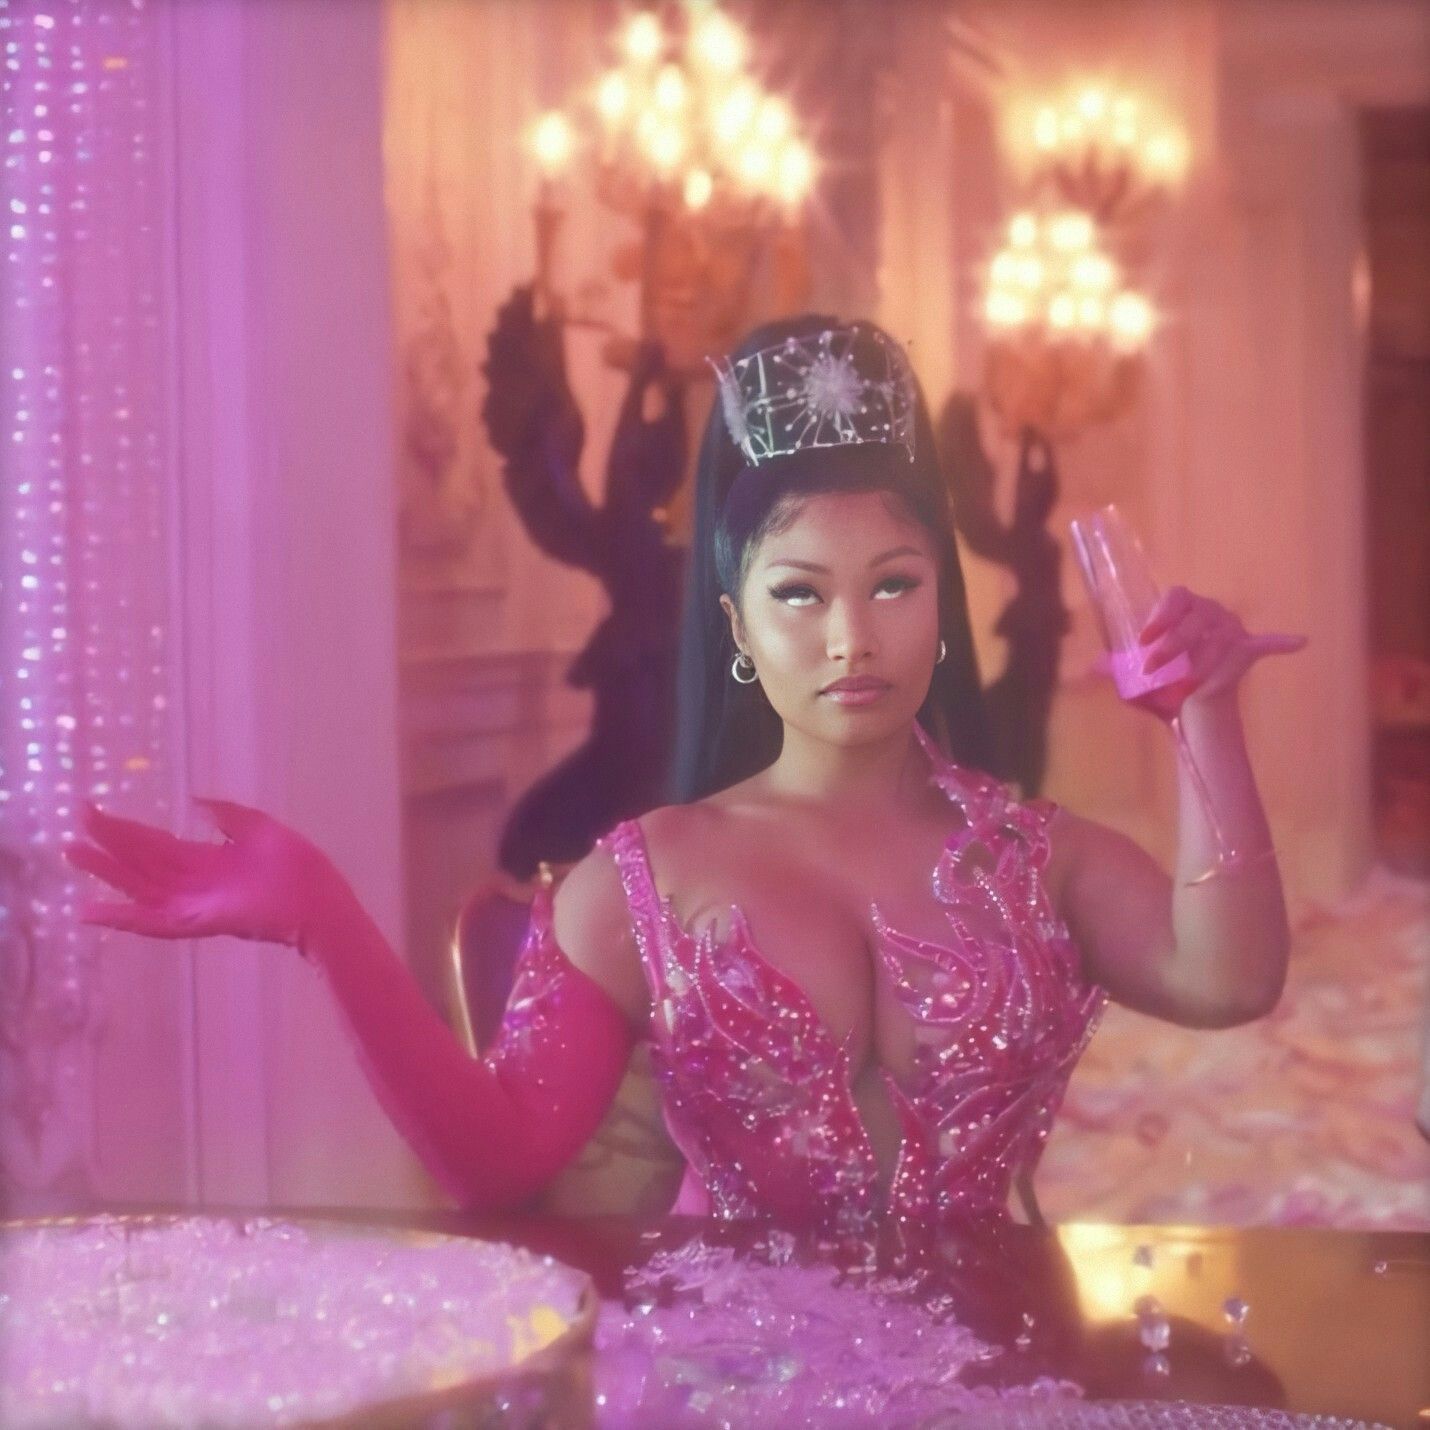 Nicki Minaj. Nicki minaj wallpaper, Pink aesthetic, Pastel pink aesthetic